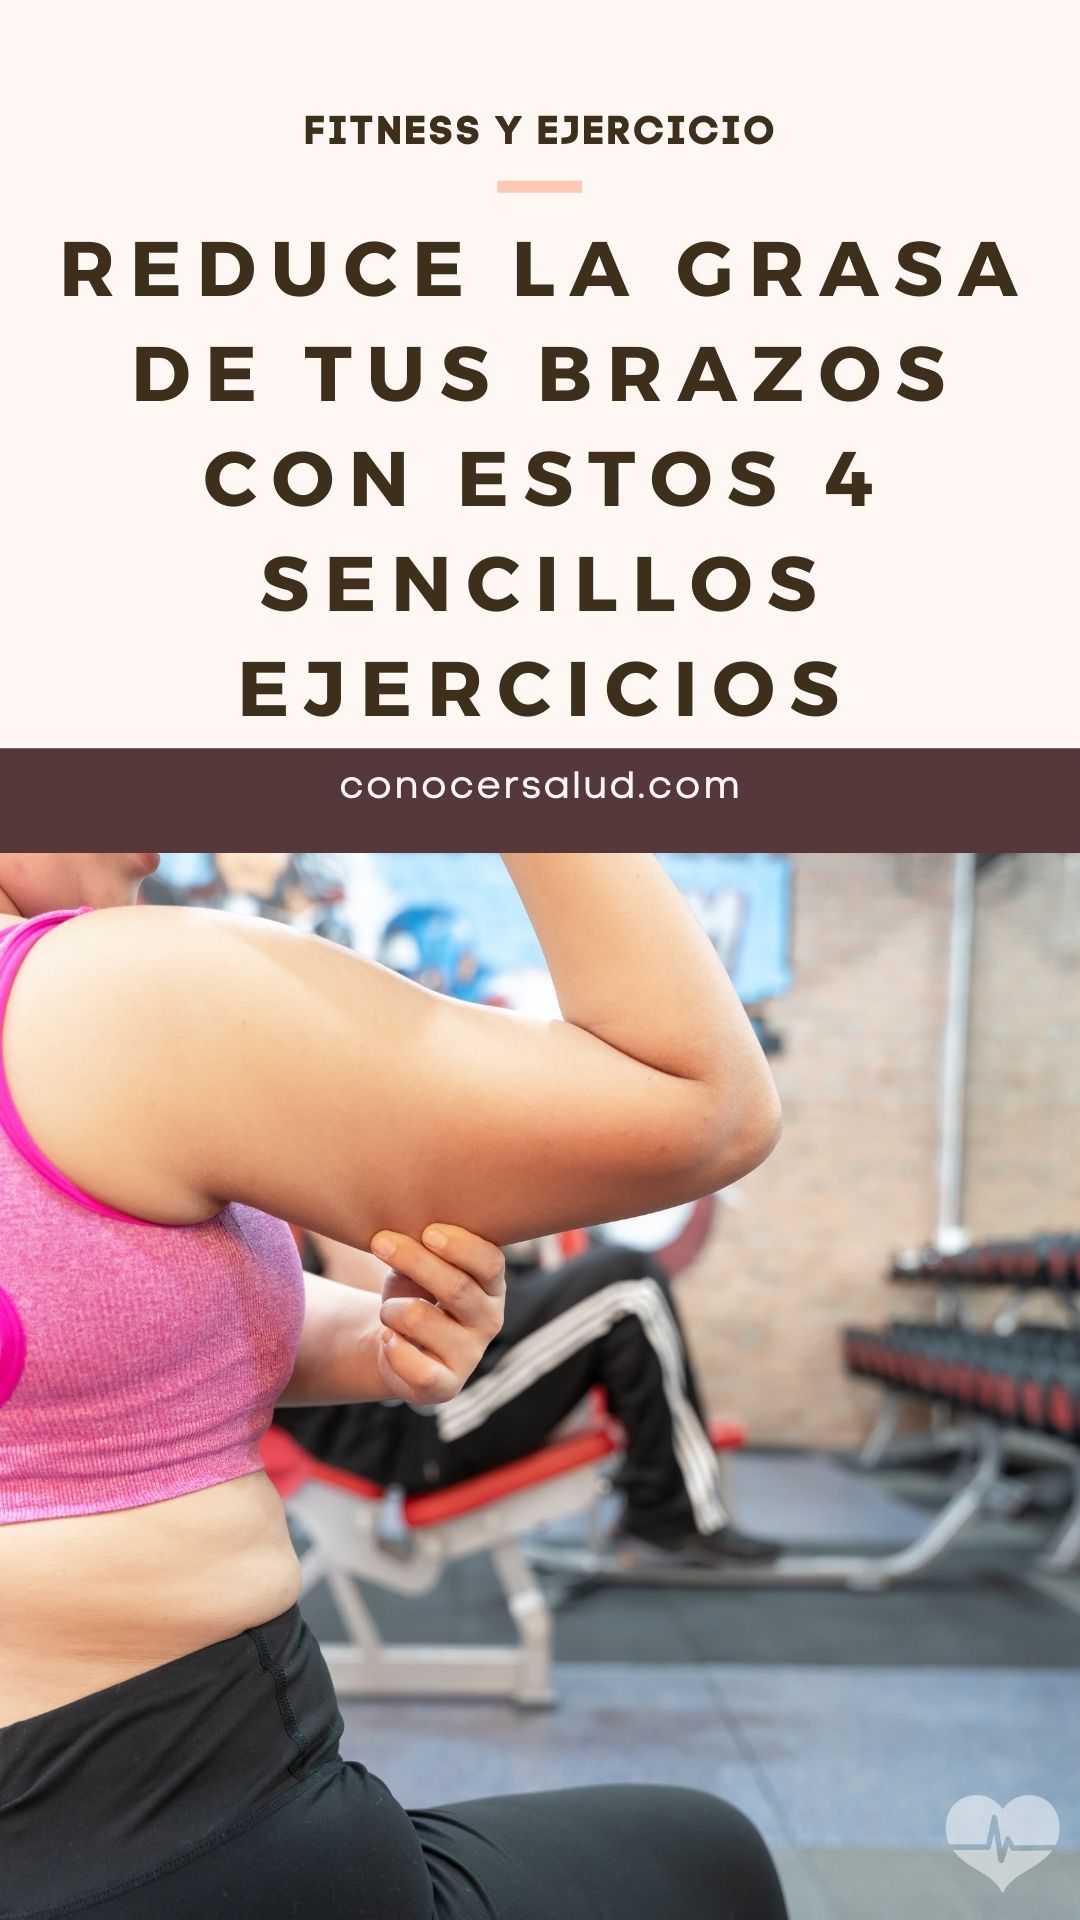 Reduce la grasa de tus brazos con estos 4 sencillos ejercicios